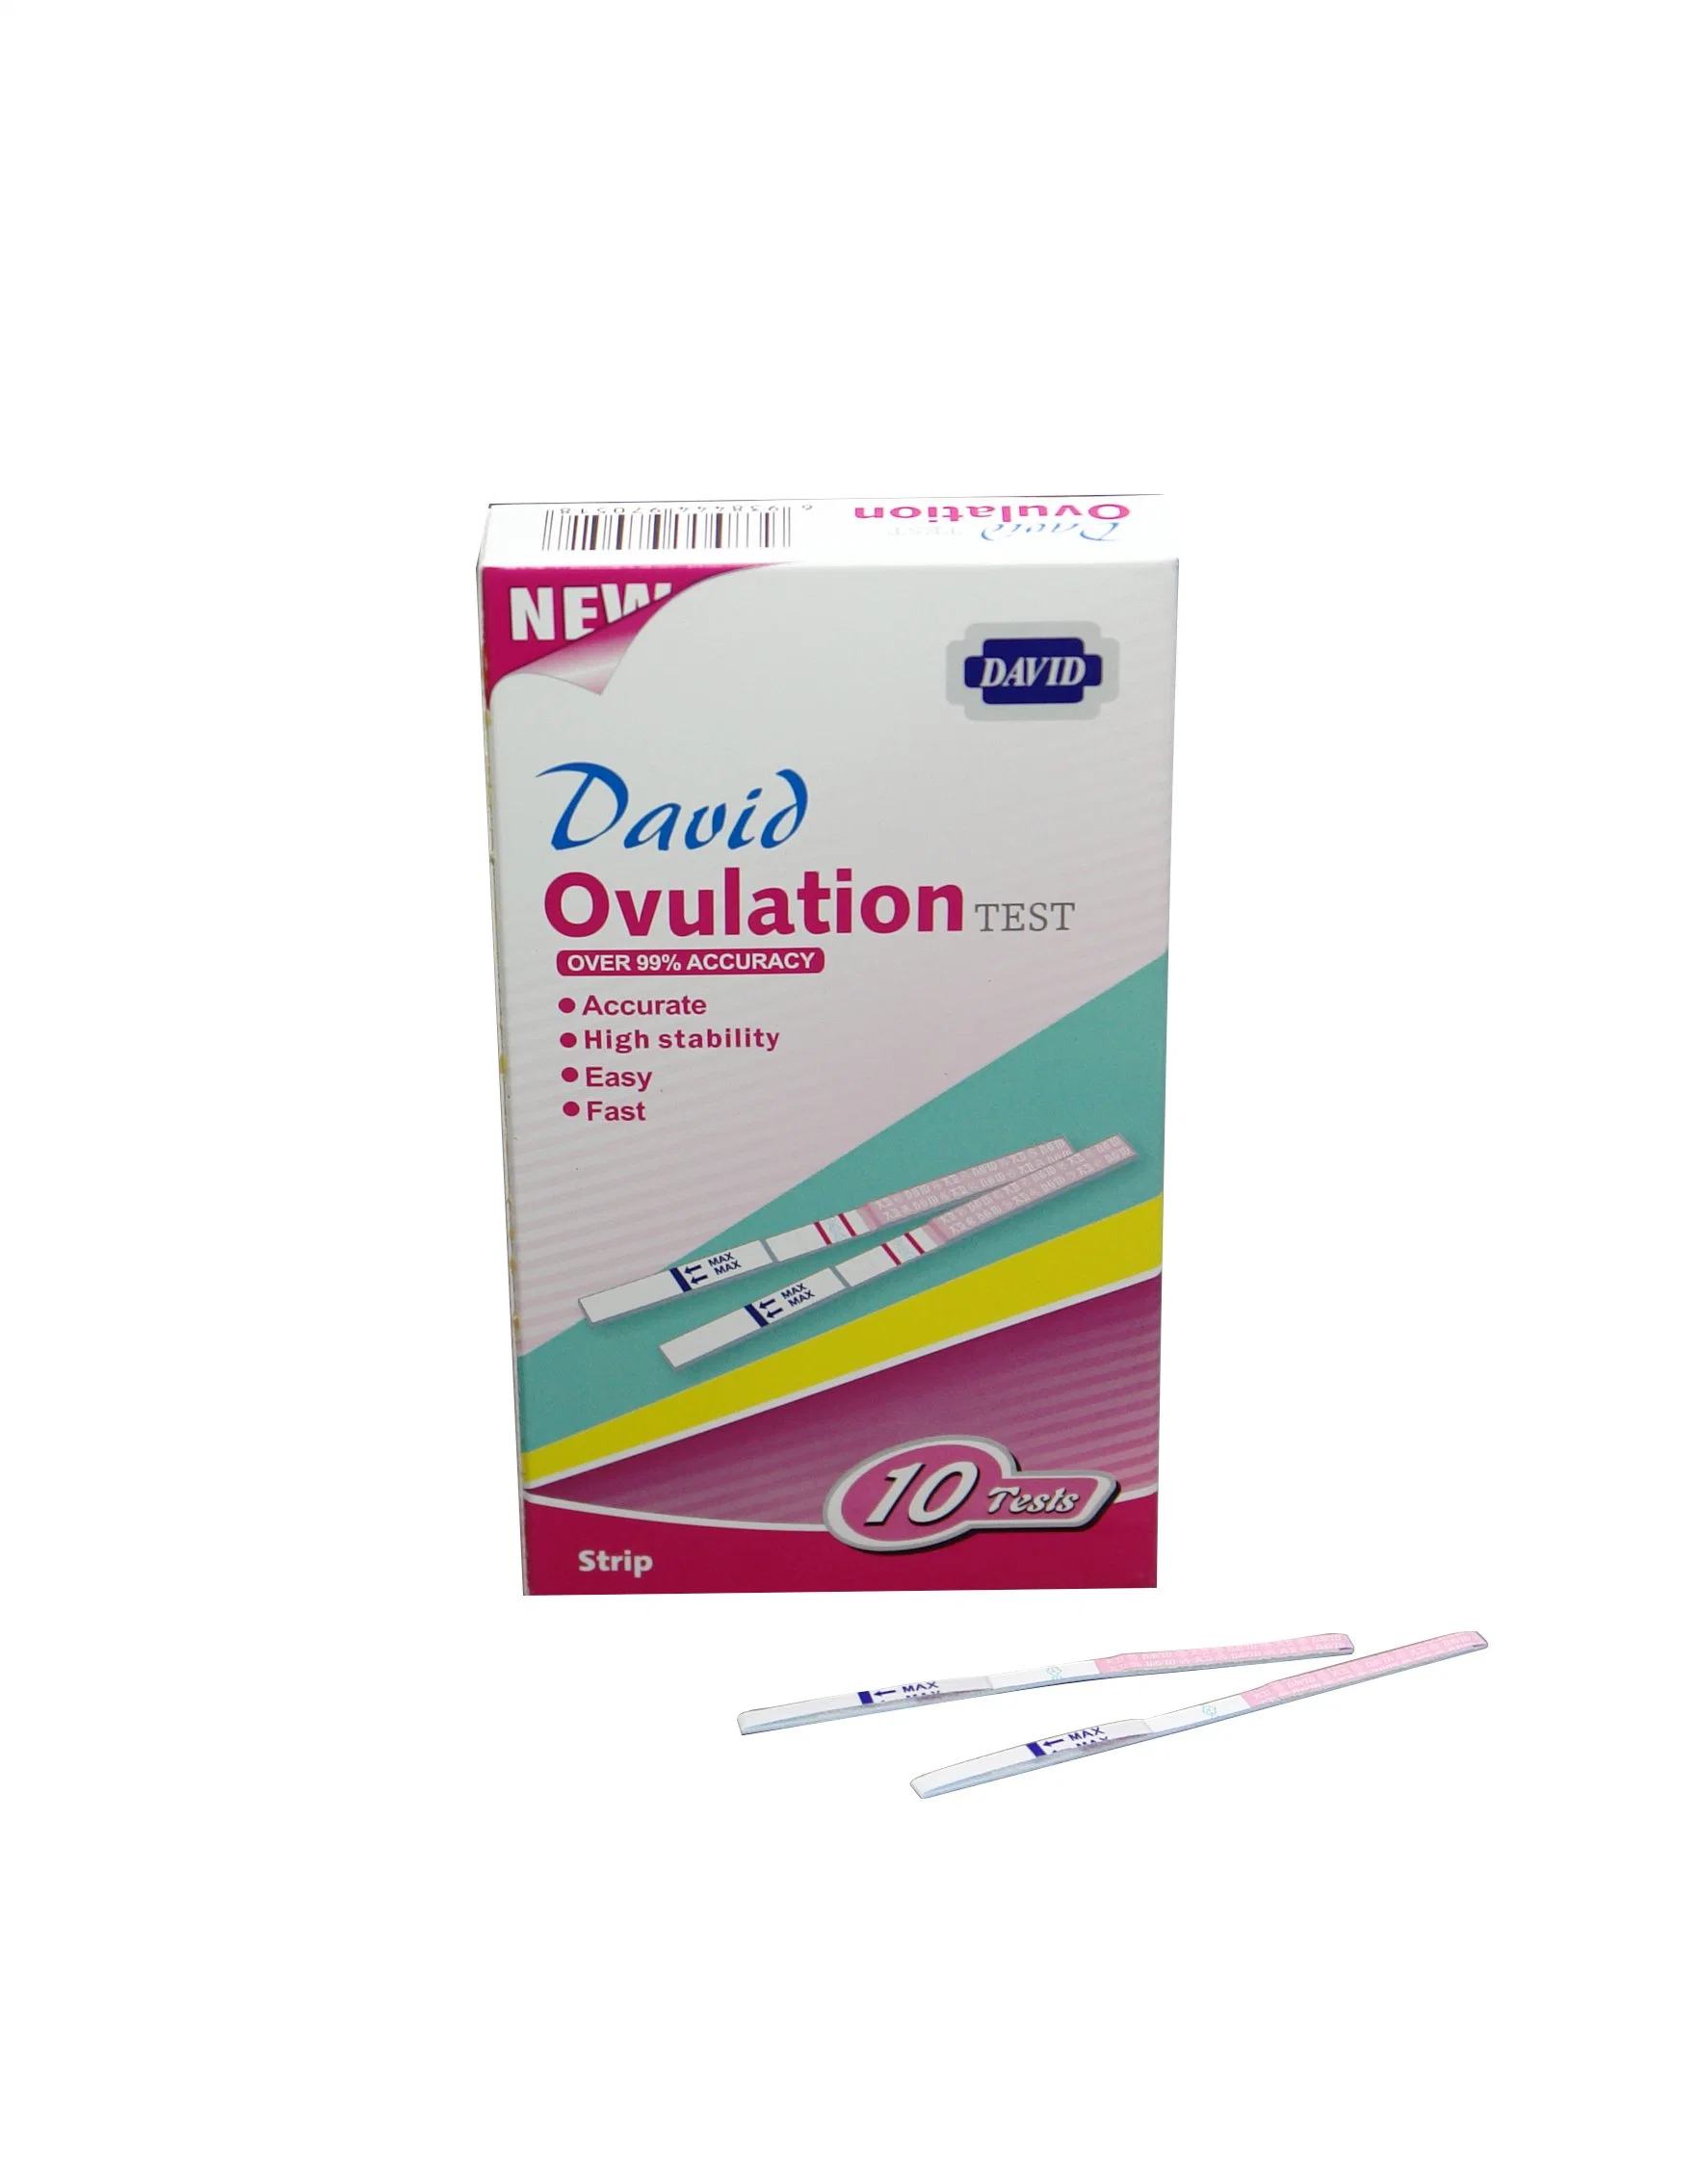 ديفيد 99% دقة OEM Home Use Urine LH Ovulation Test مجموعة الأدوات